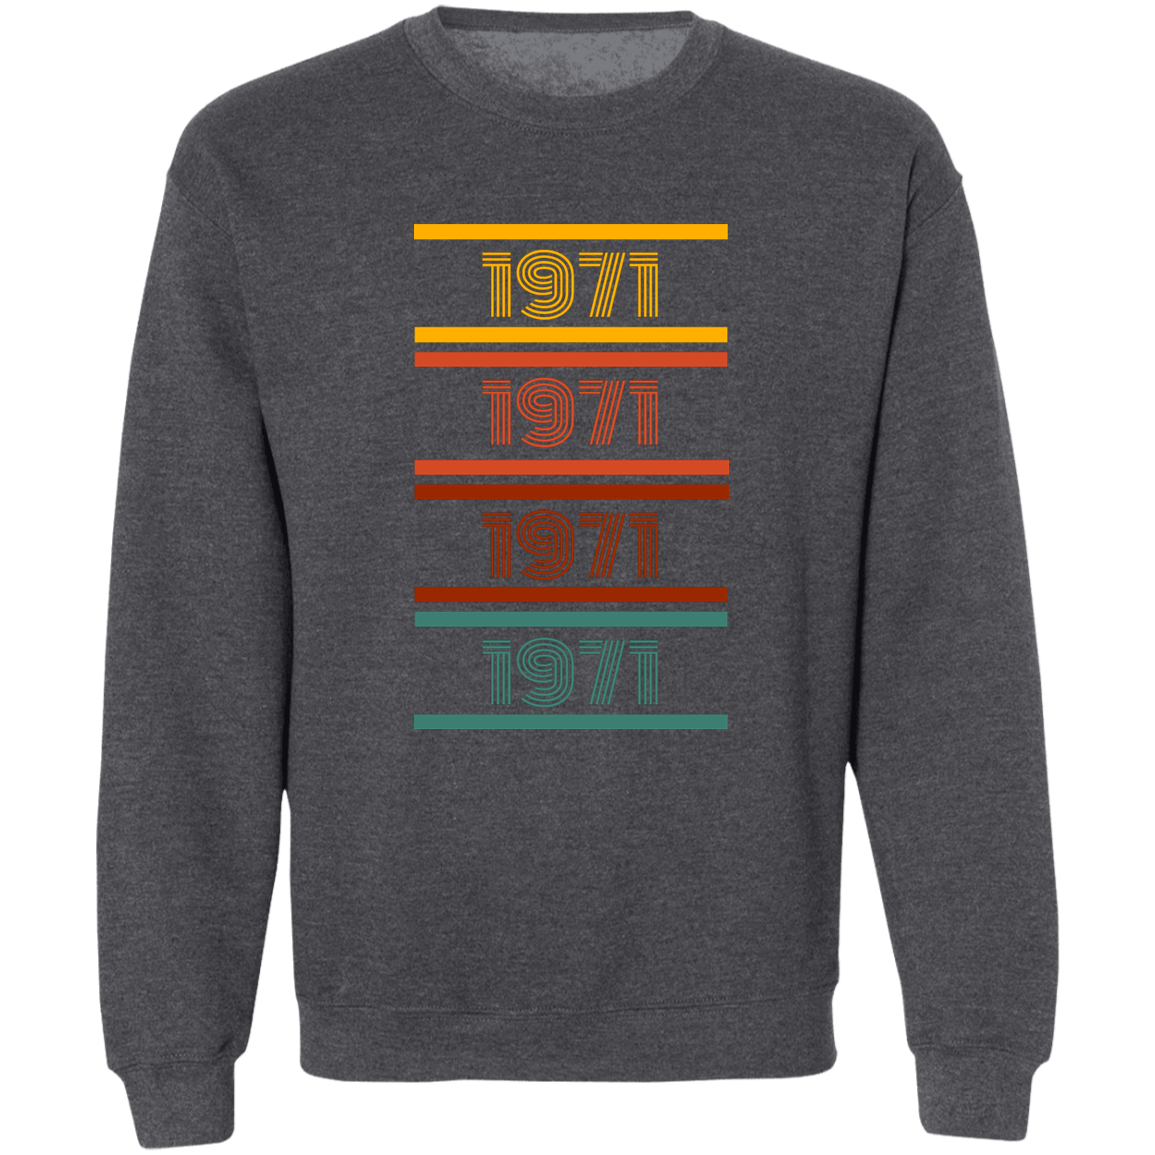 1971 Sweatshirt